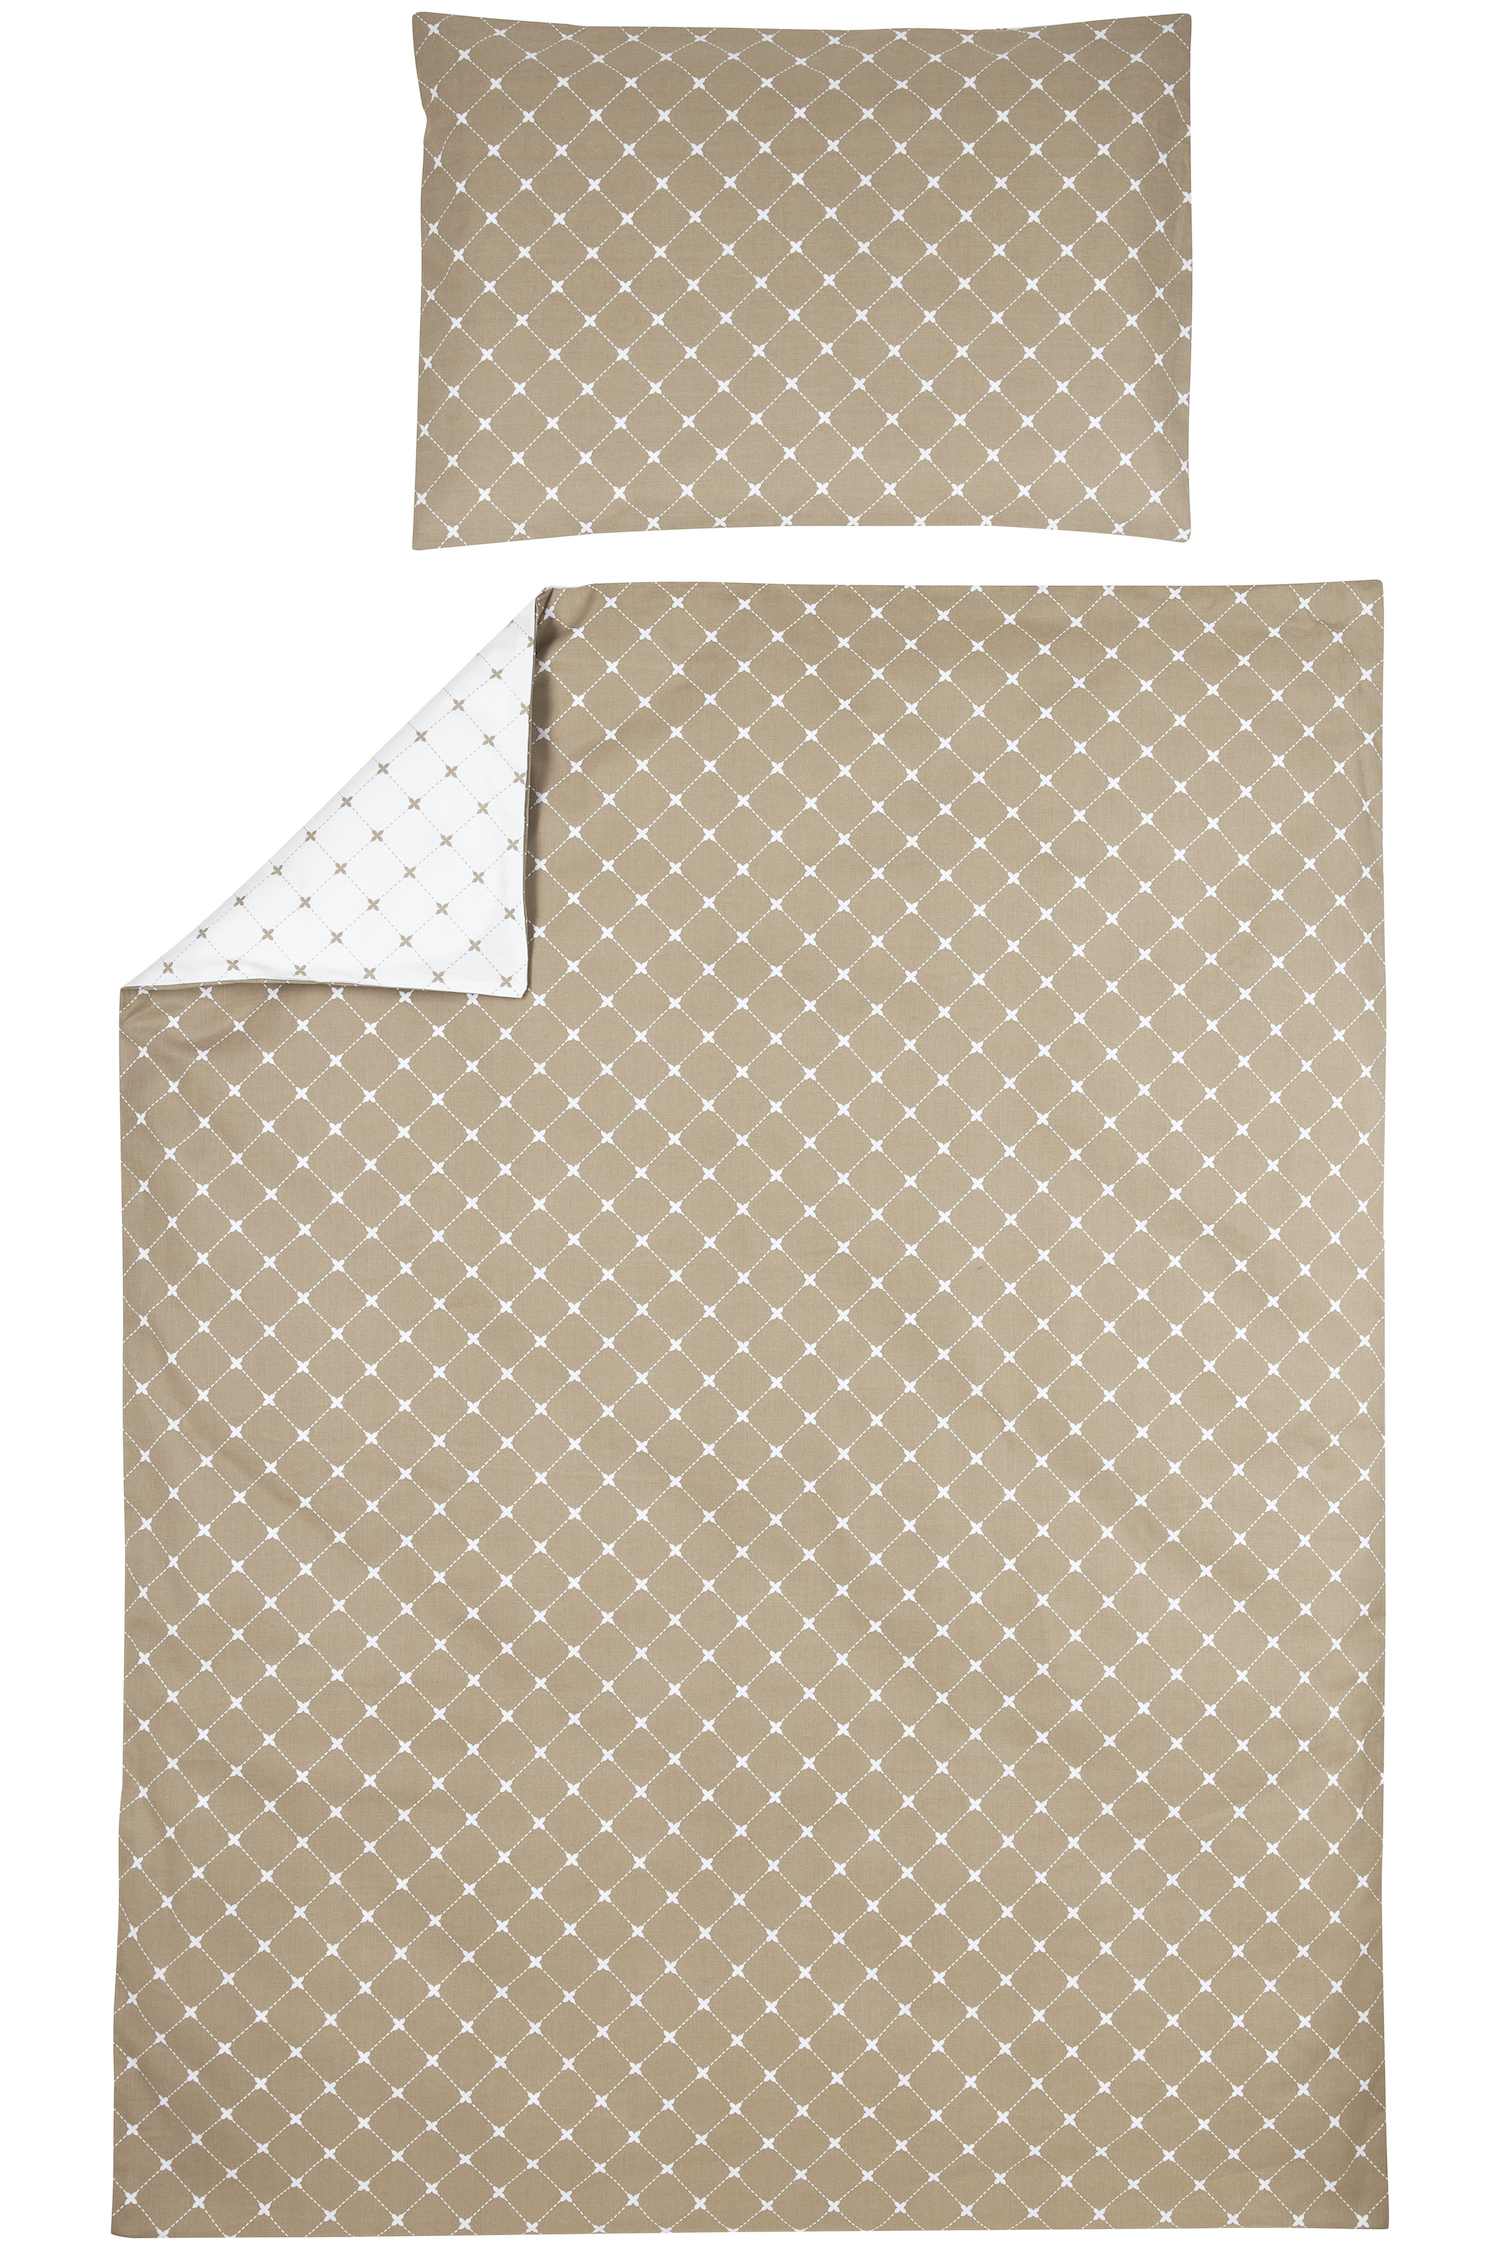 Meyco X Mrs. Keizer Duvet Cover + Pillow Case Louis - Taupe - 100x135cm